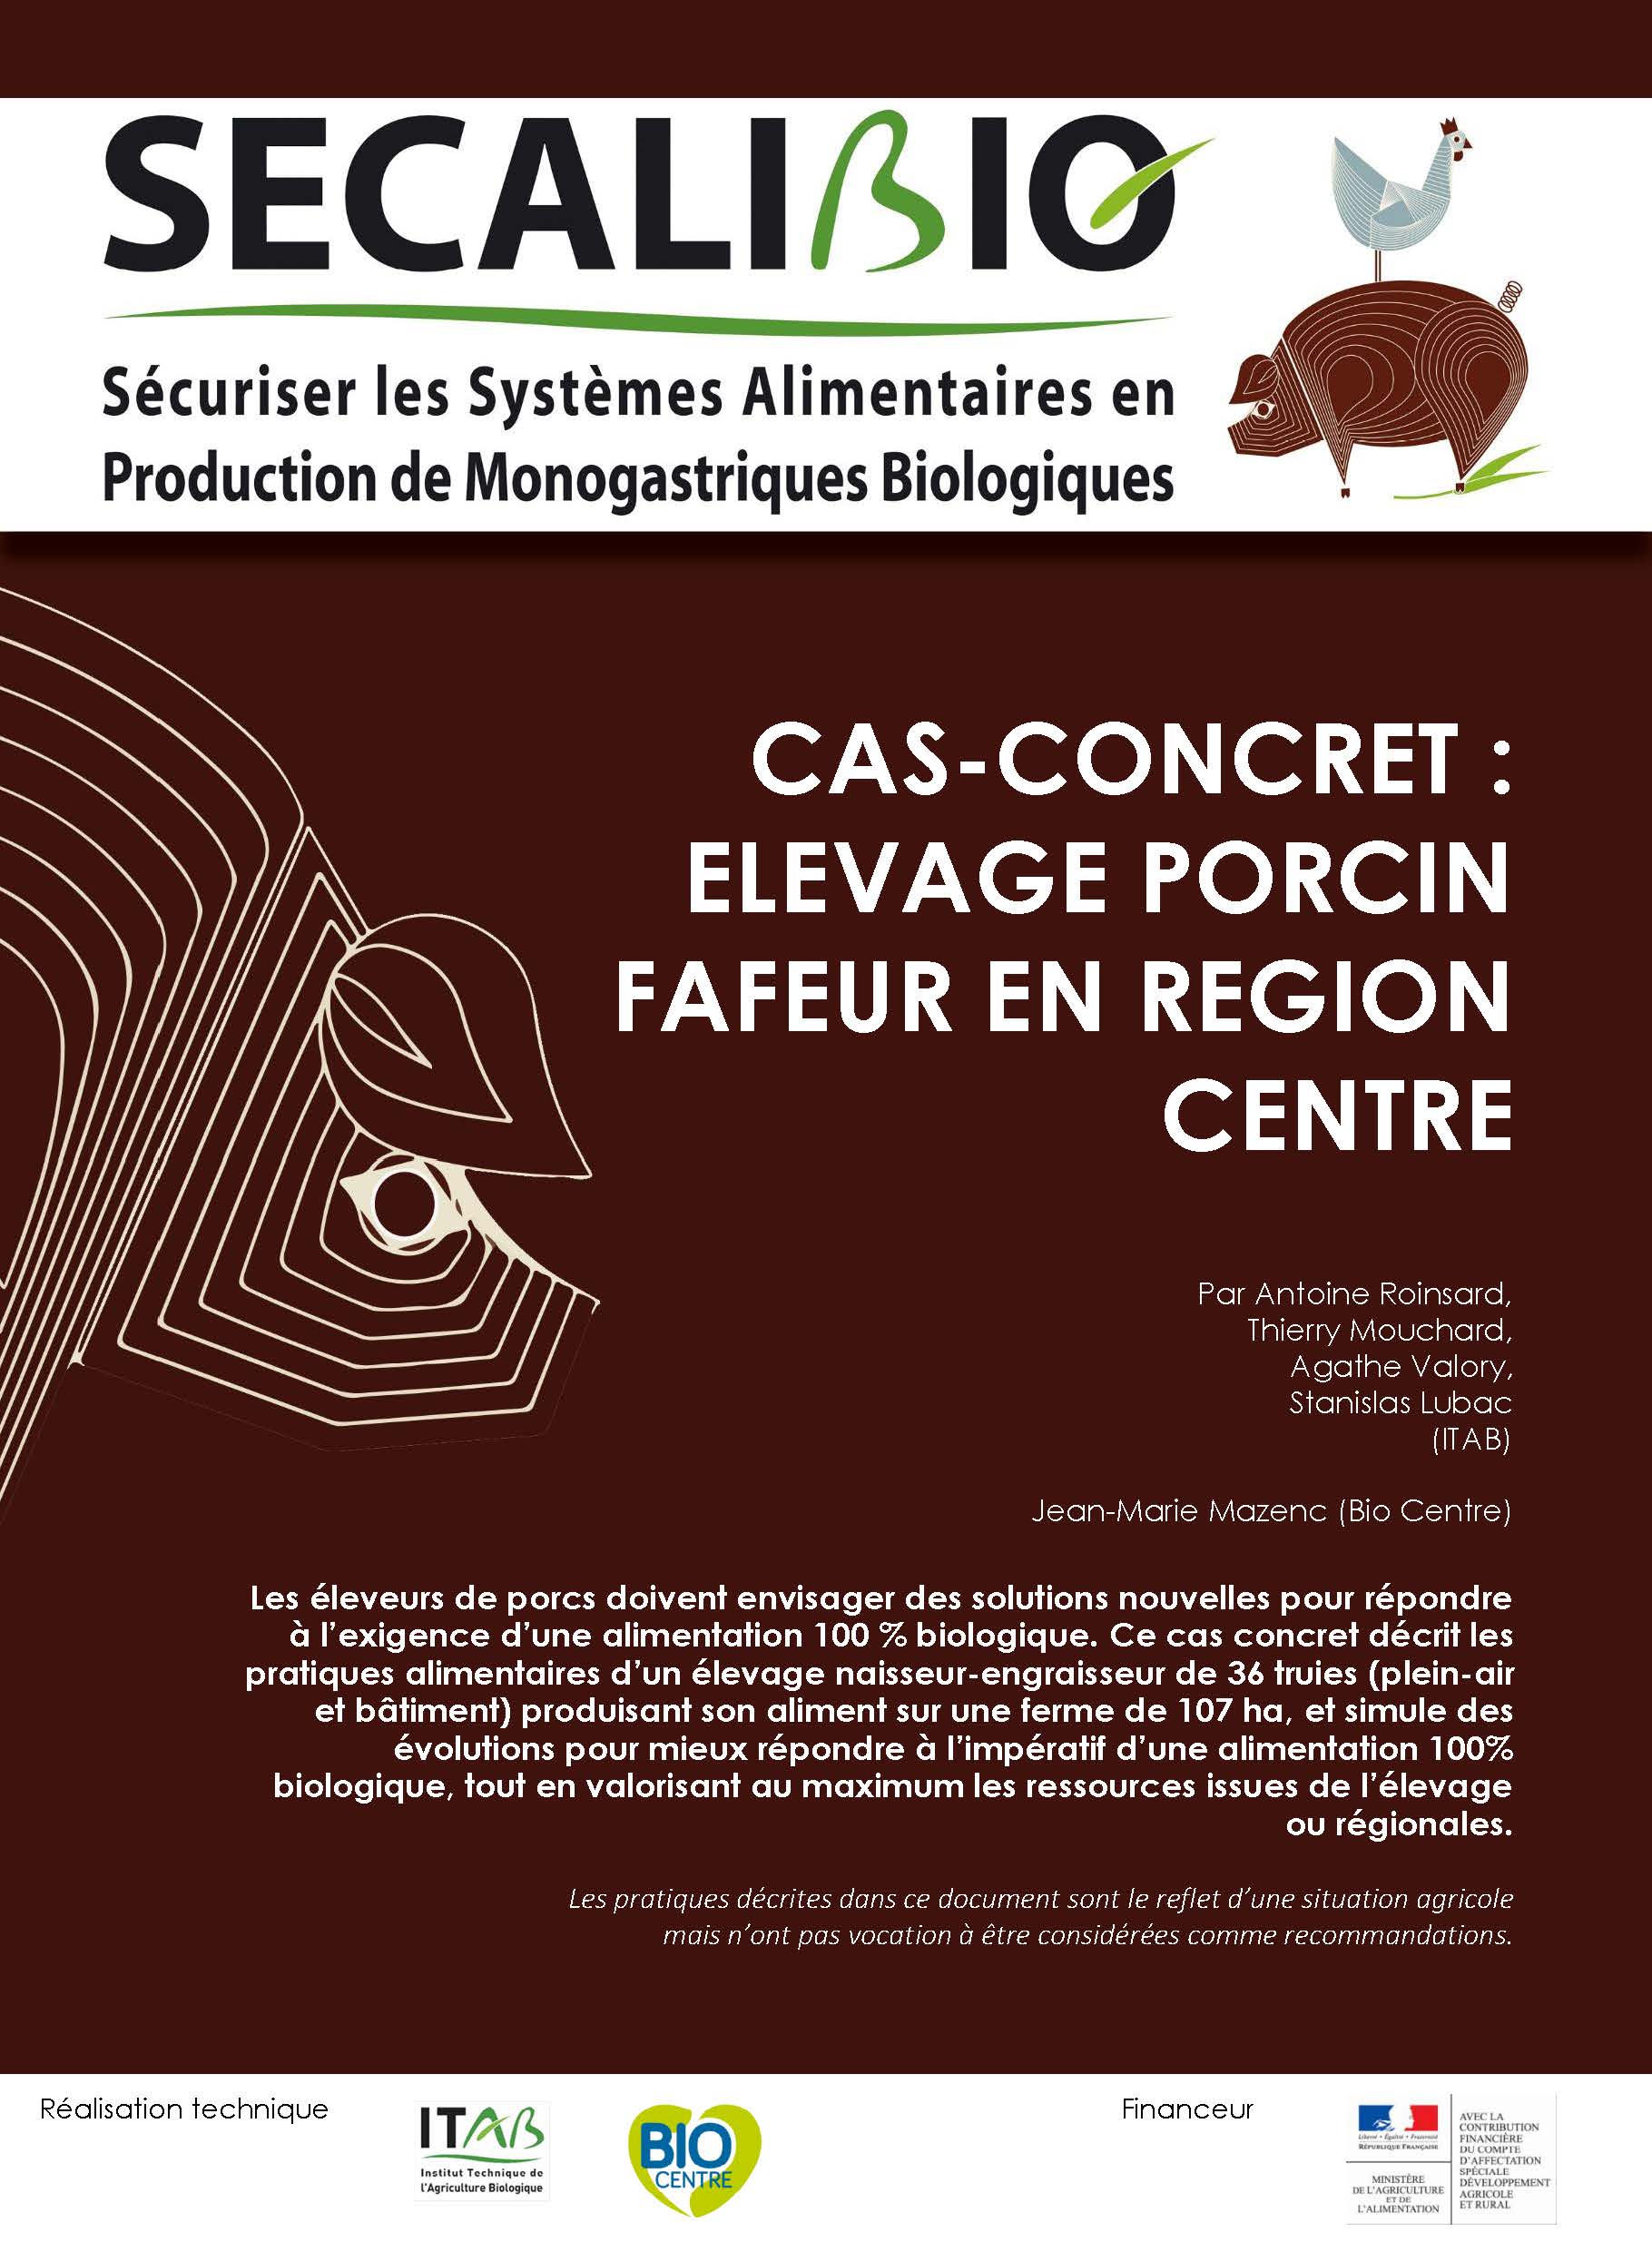 Sistema agrícola evaluado: granja porcina en la región Centro de Francia